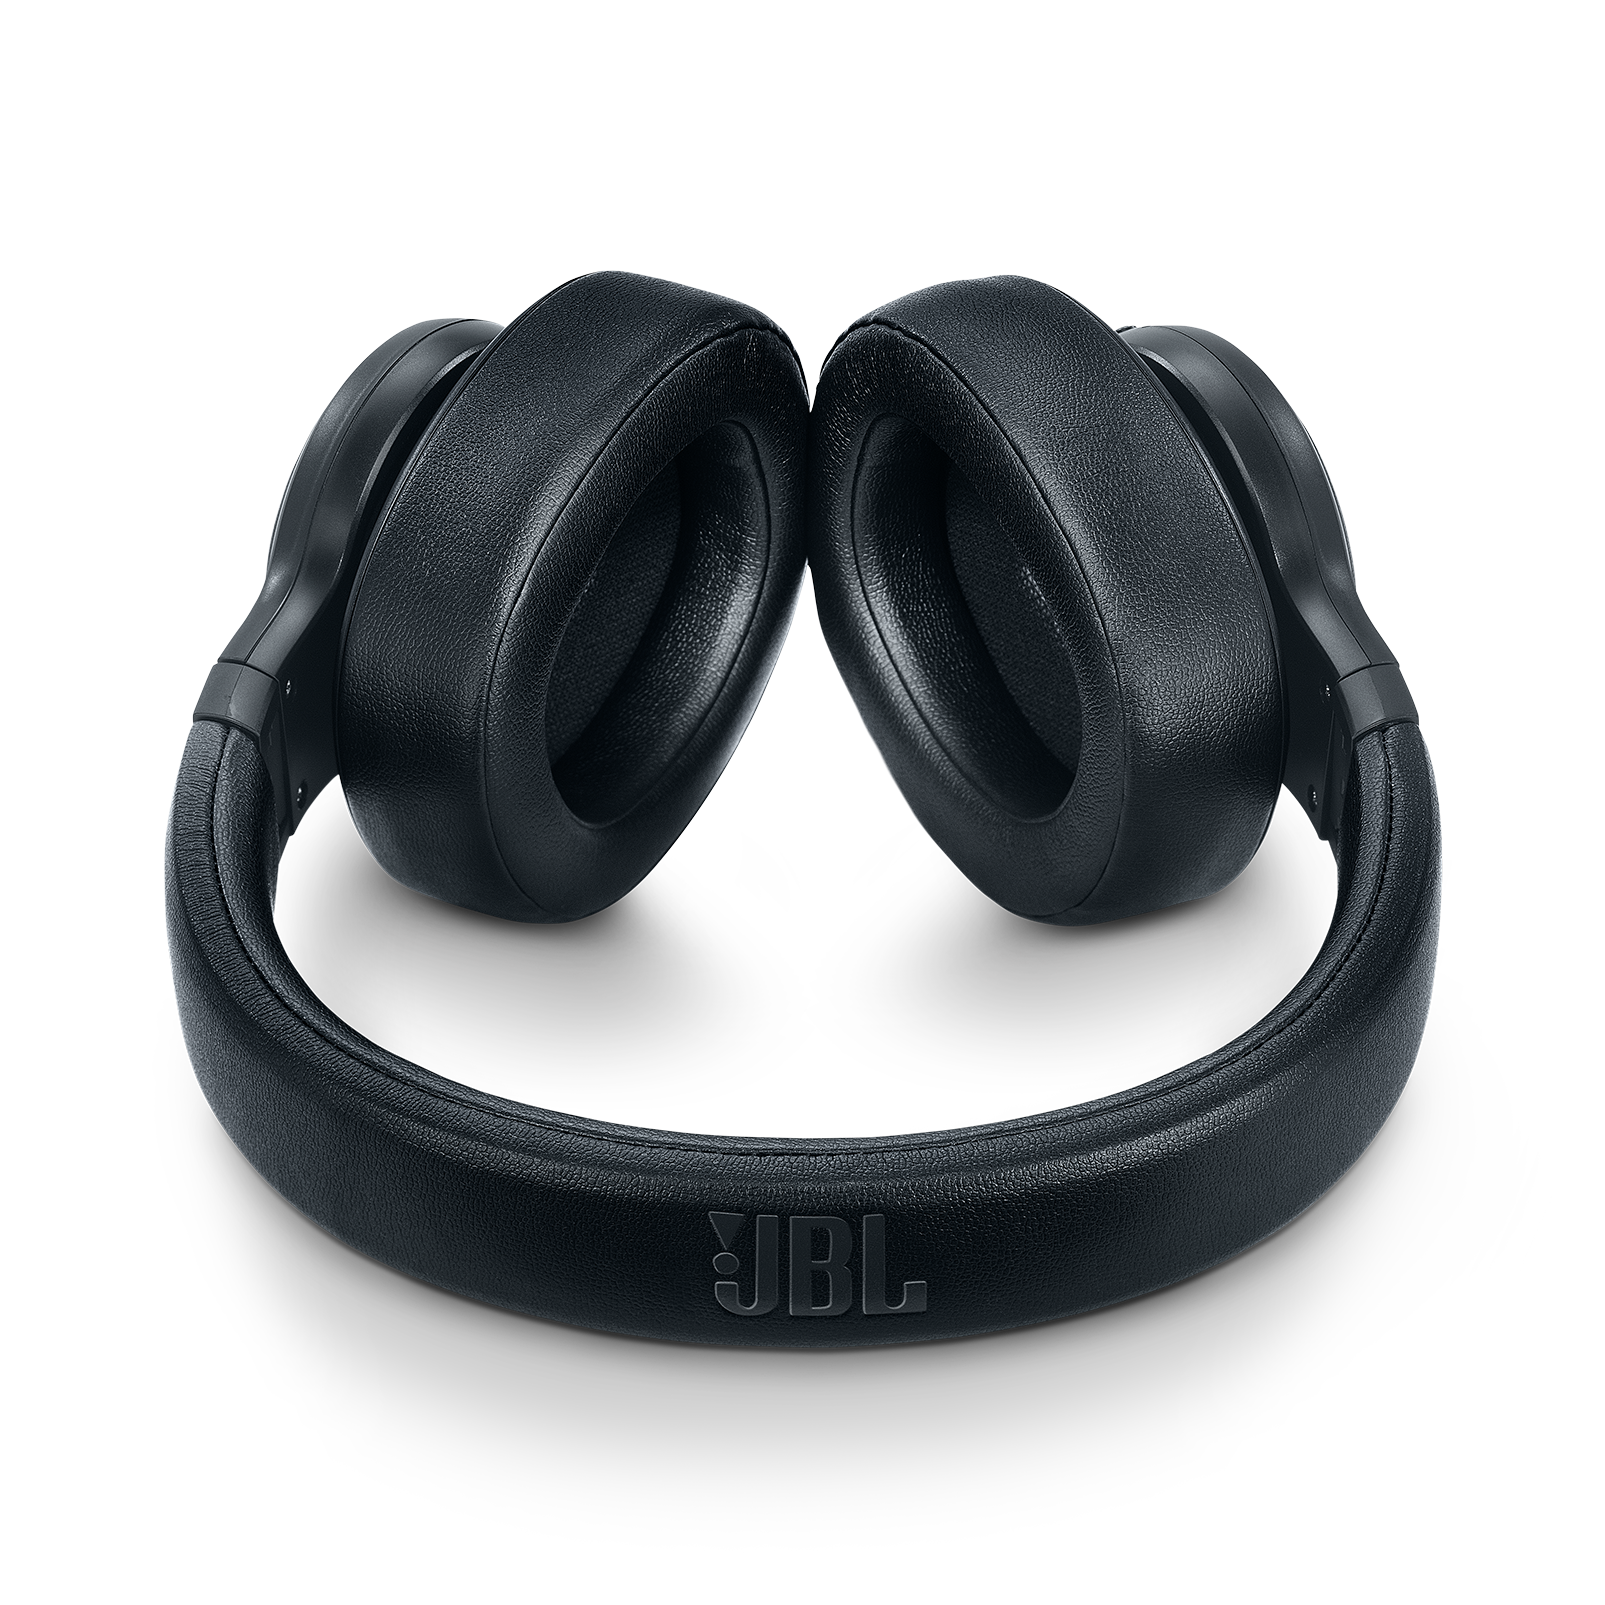 jbl duet nc headphones valued at $349.95 rrp